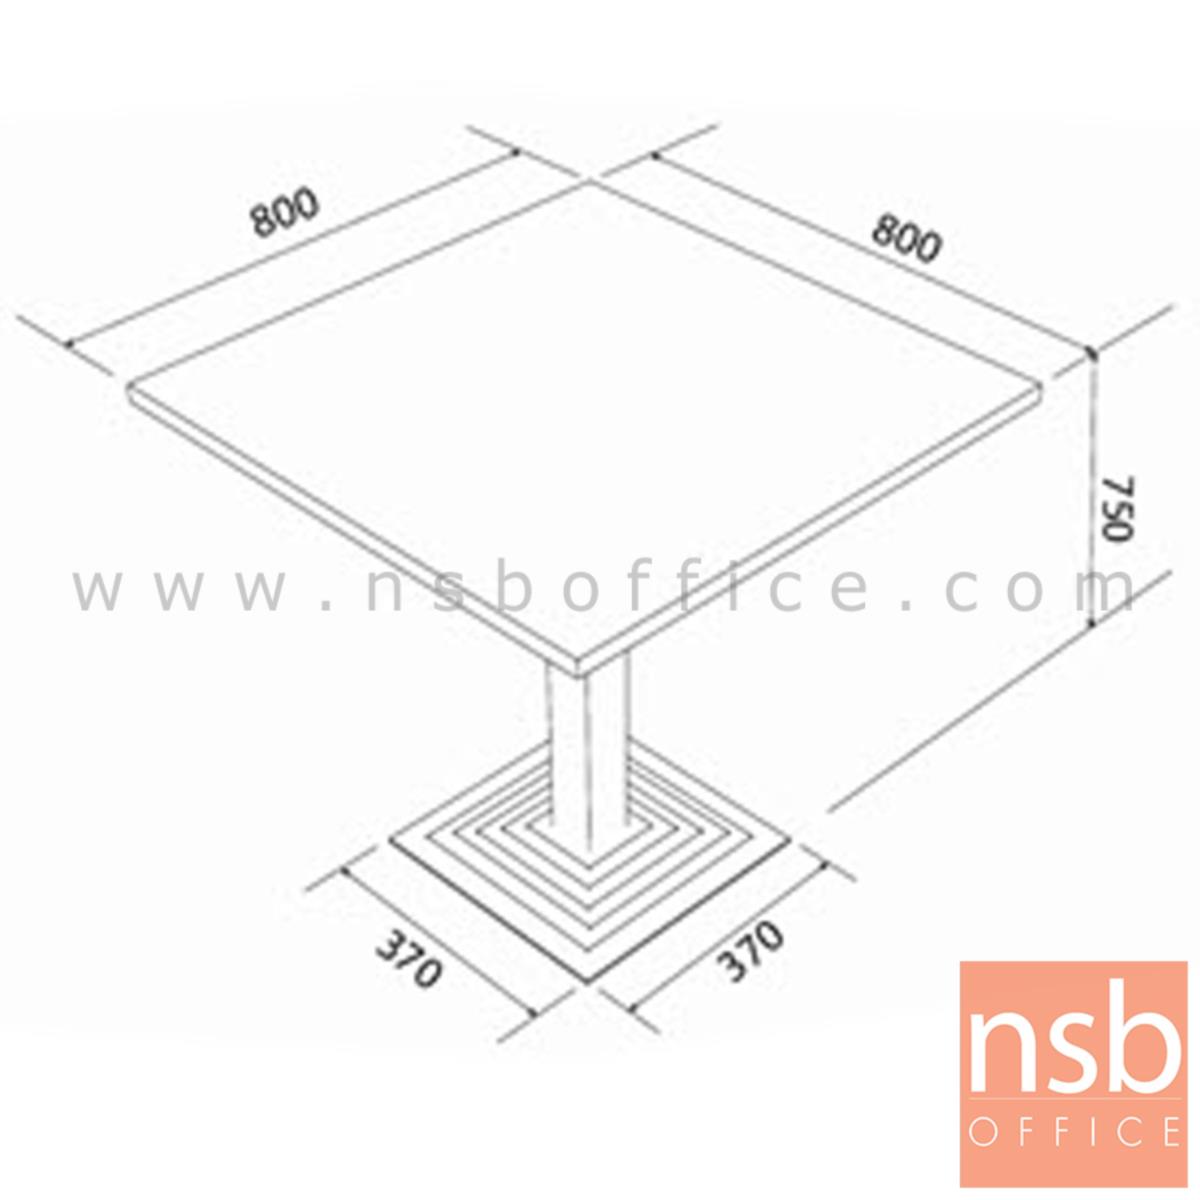 โต๊ะประชุมทรงสี่เหลี่ยมเล็ก รุ่น BERLIN (เบอร์ลิน) ขนาด 80W cm. เมลามีน สีดำ-มอคค่าวอลนัท